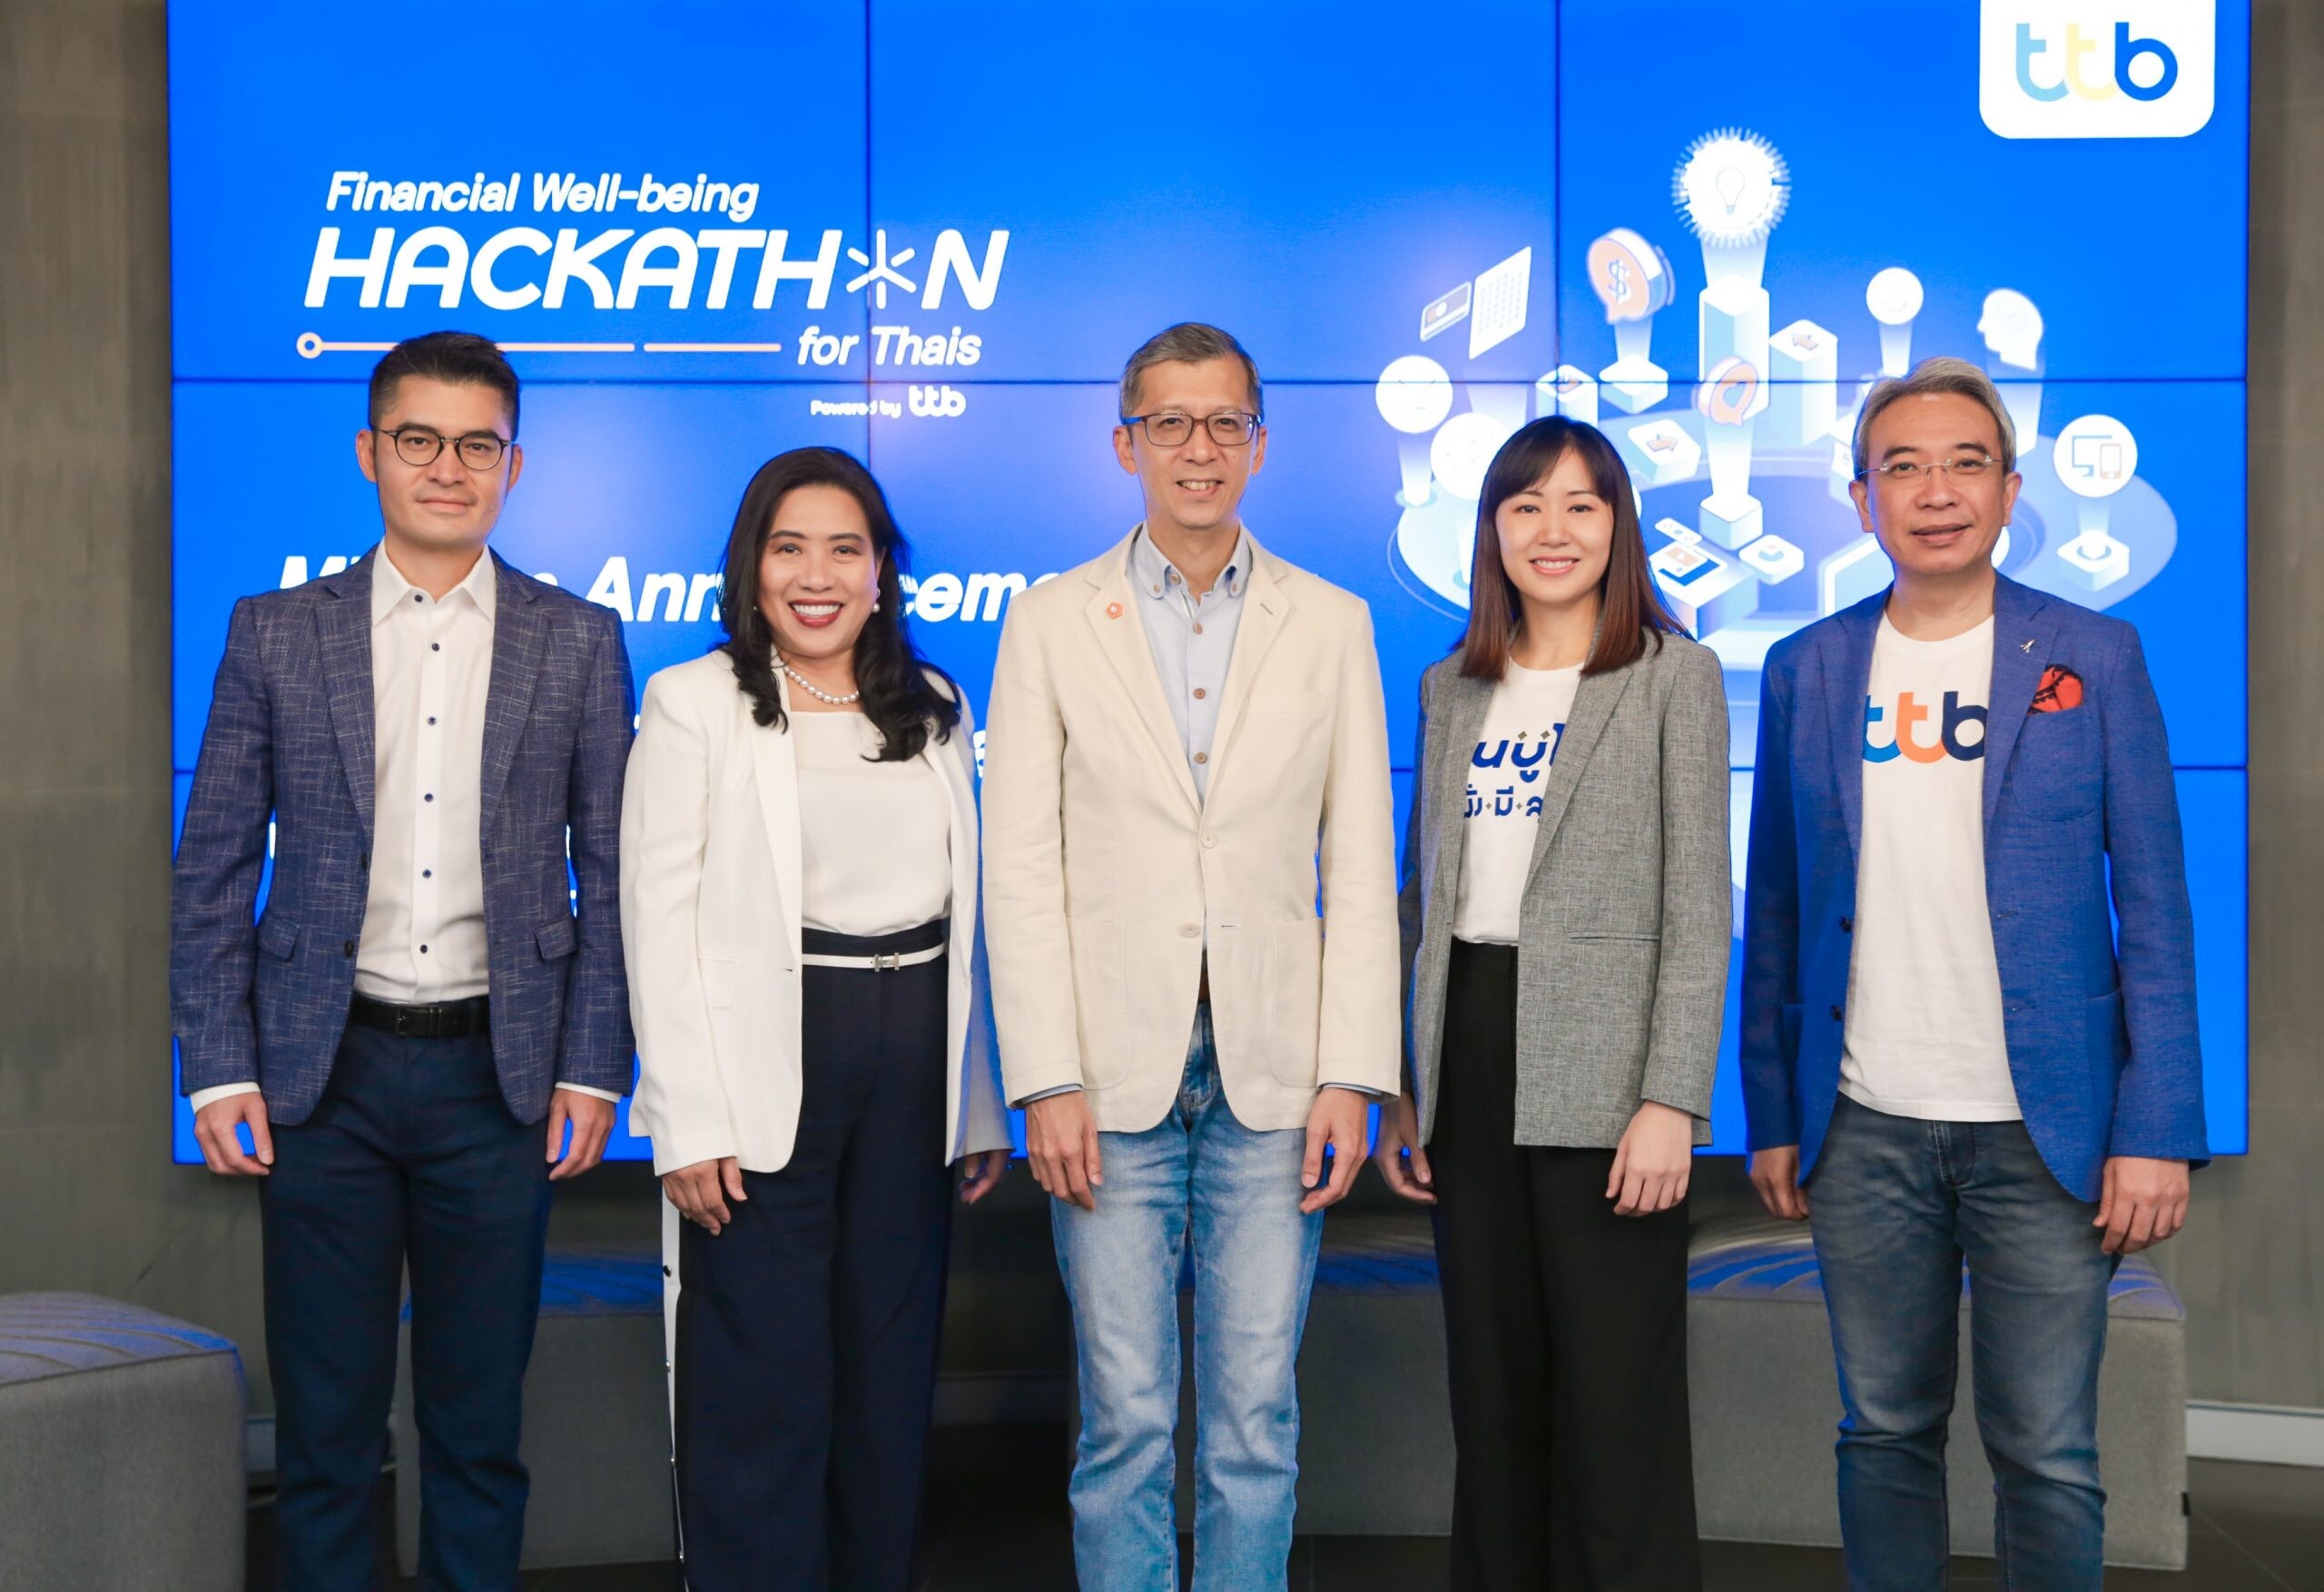 ทีเอ็มบีธนชาต ประกาศ Mission งาน "Financial Well-being Hackathon for Thais" ชวนคนรุ่นใหม่ ใช้พลัง Tech และ Data สร้างโซลูชันทางการเงินใหม่แก่คนไทย